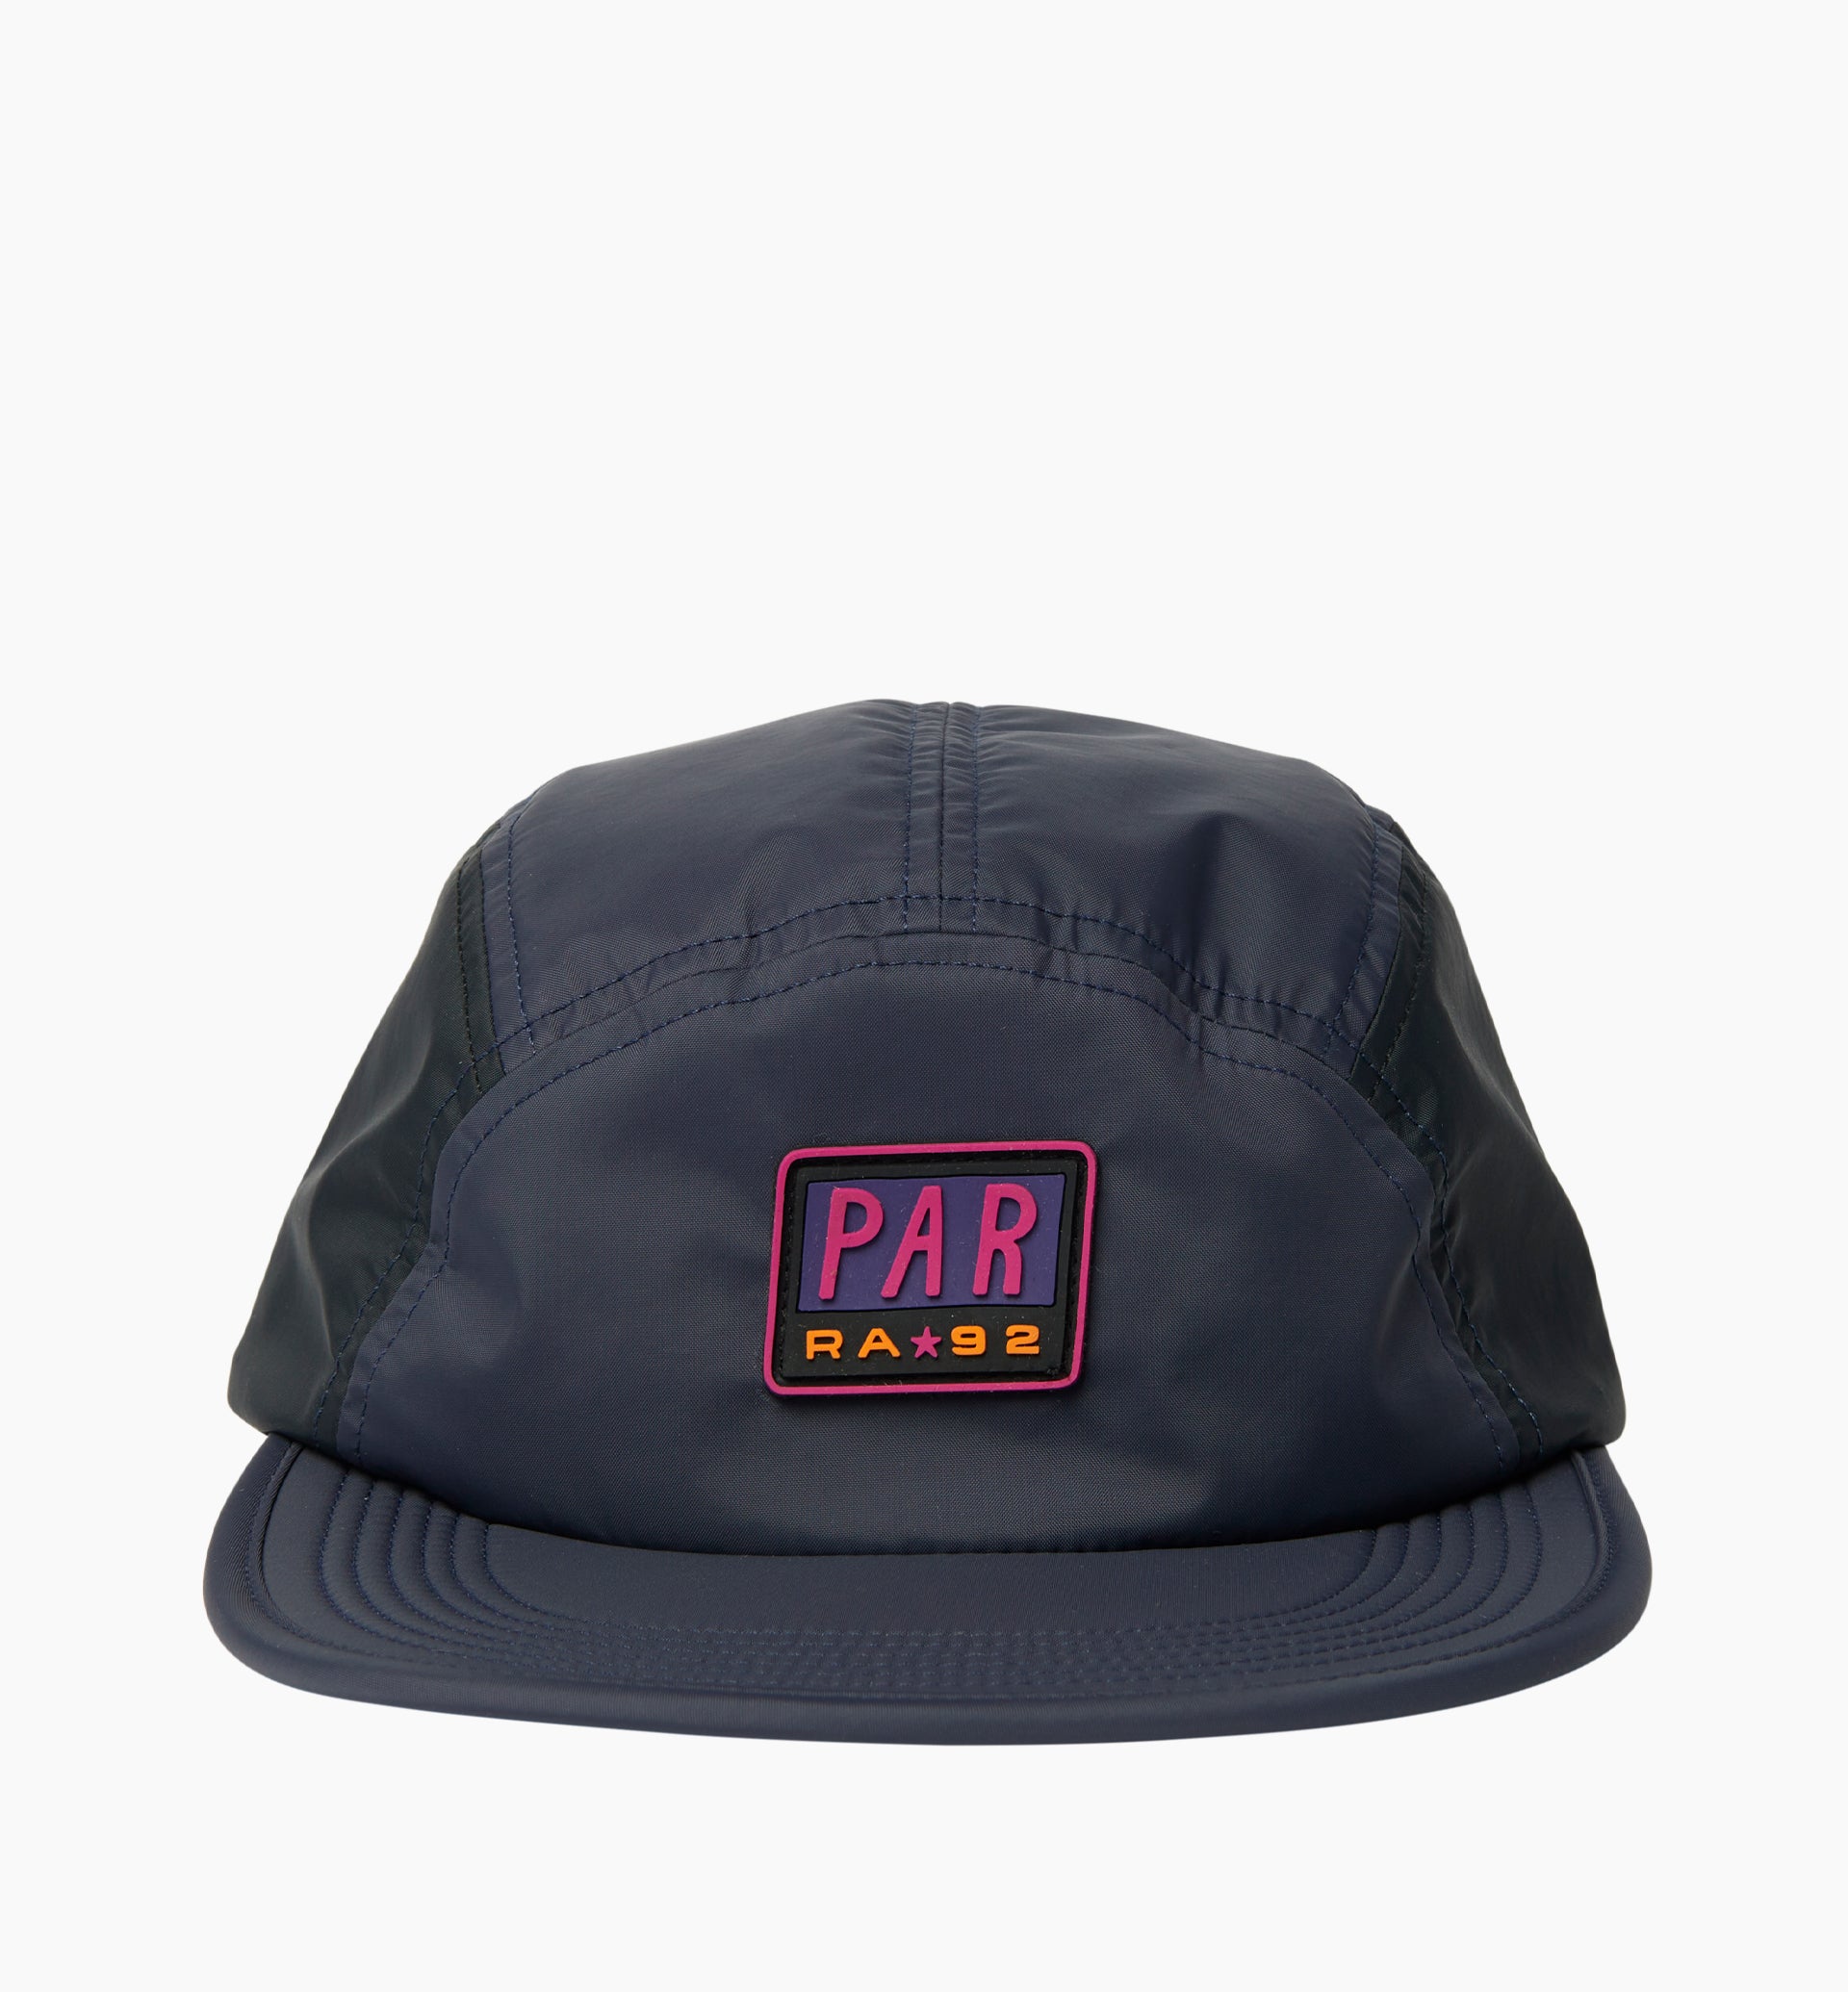 Parra - 1992 logo 5 panel hat